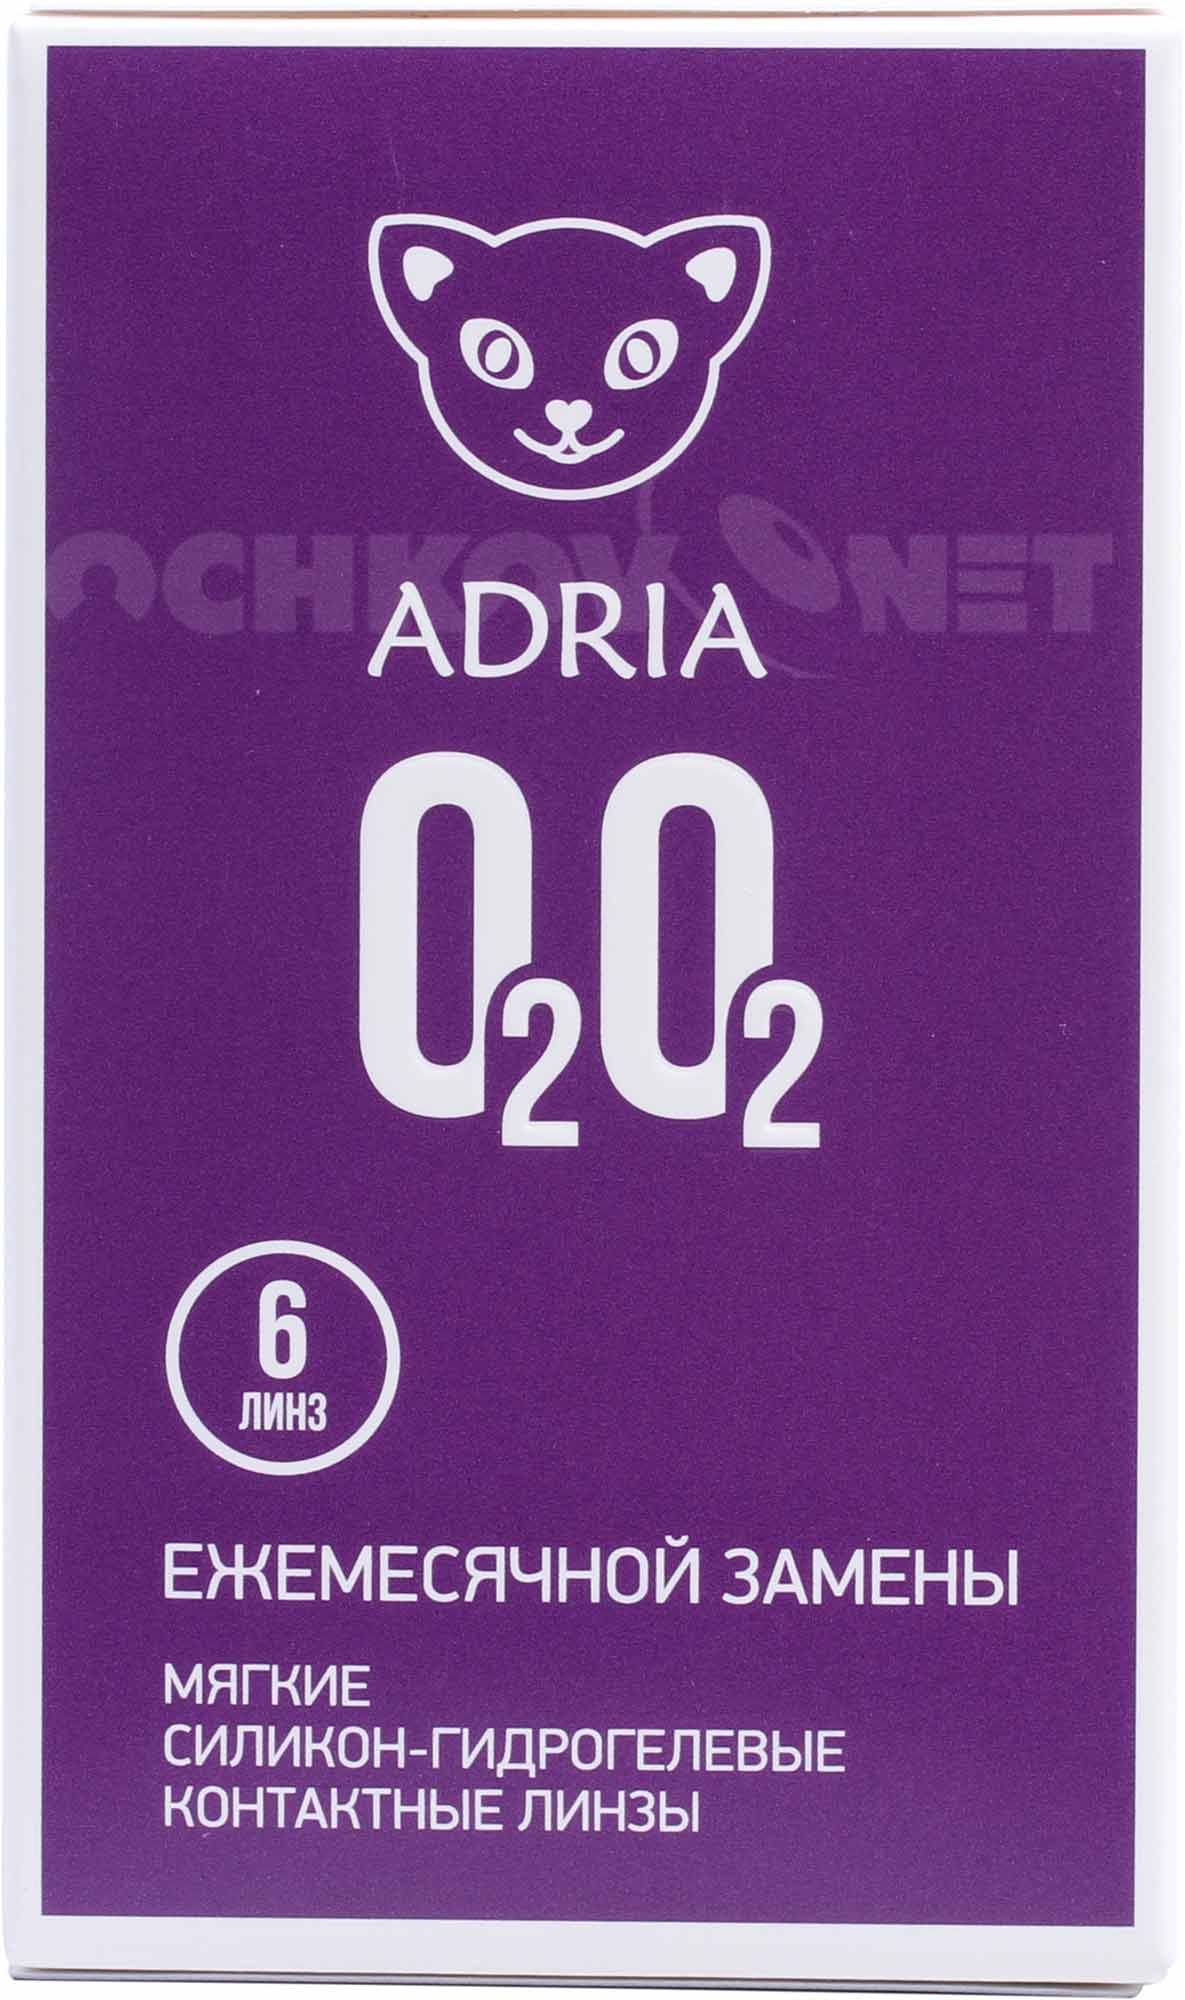 Купить Контактные линзы Adria O2O2 (6 линз), Interojo